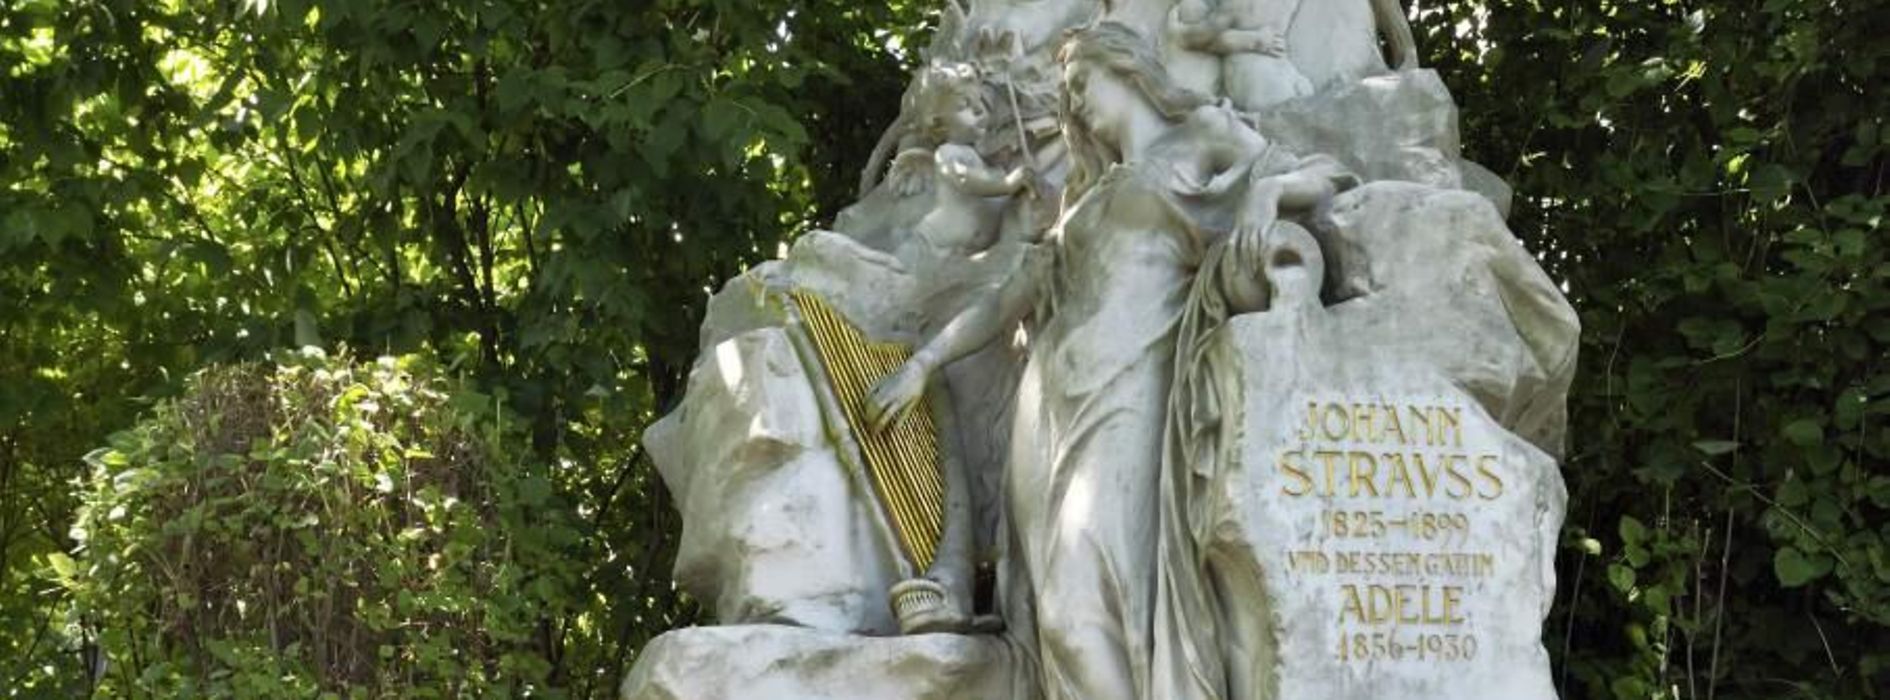 Strauß-Grab am Zentralfriedhof